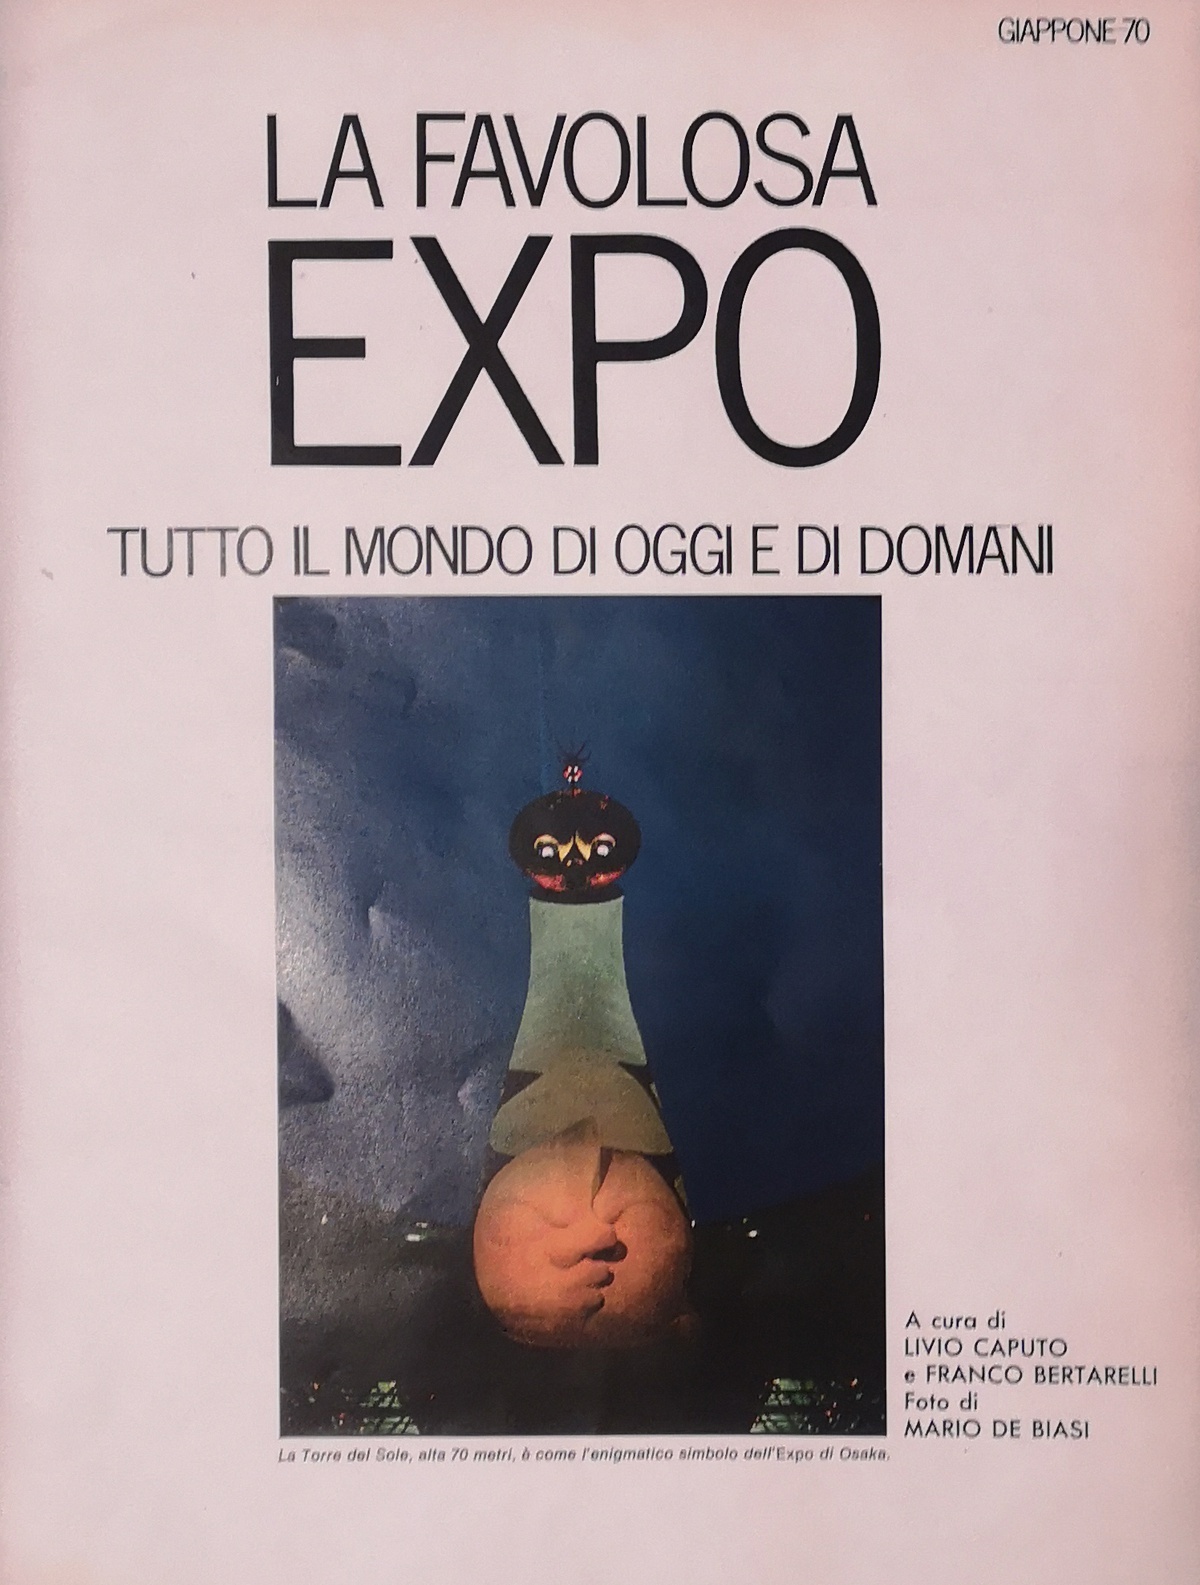 storia, design del progetto, rivista Epoca 1018, 29 marzo 1970, Expo Osaka 1970, FVG